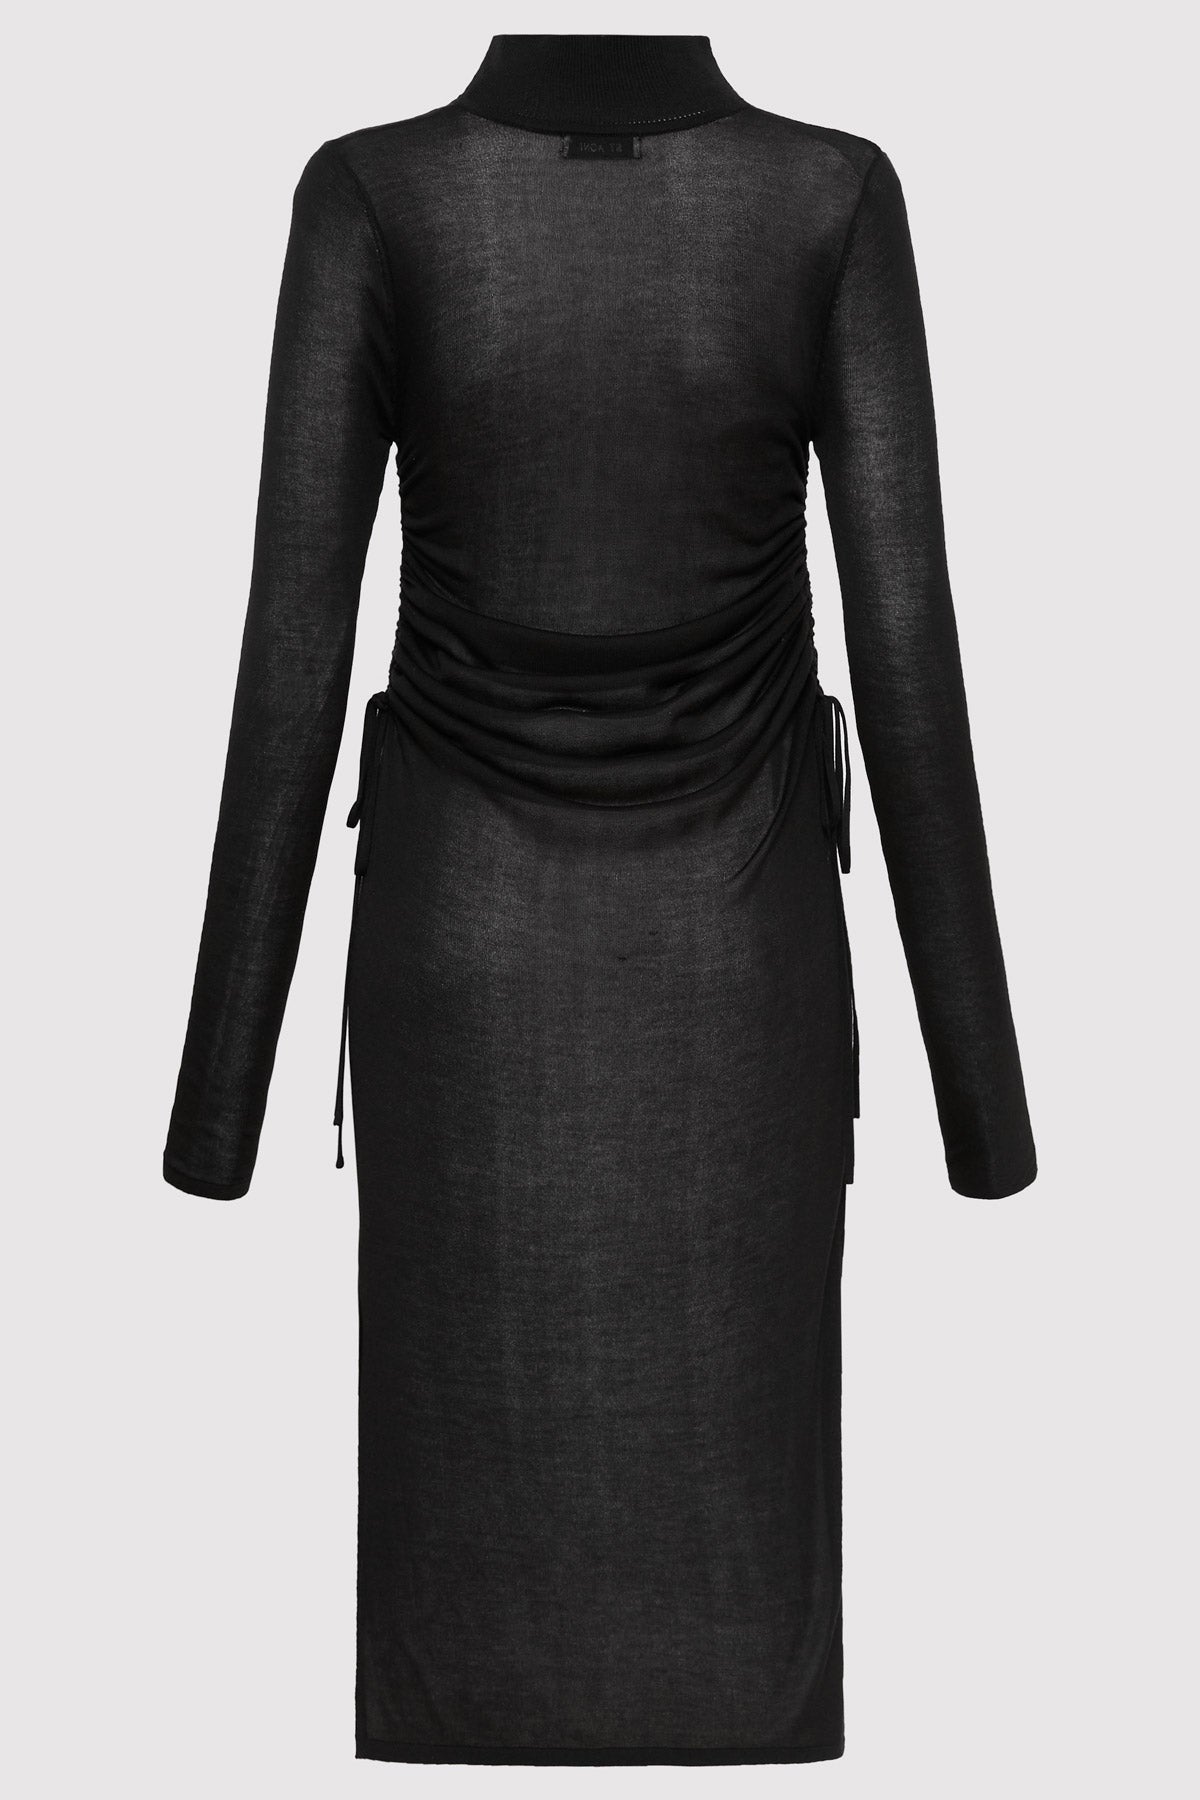 Sheer Ruched Dress - Black